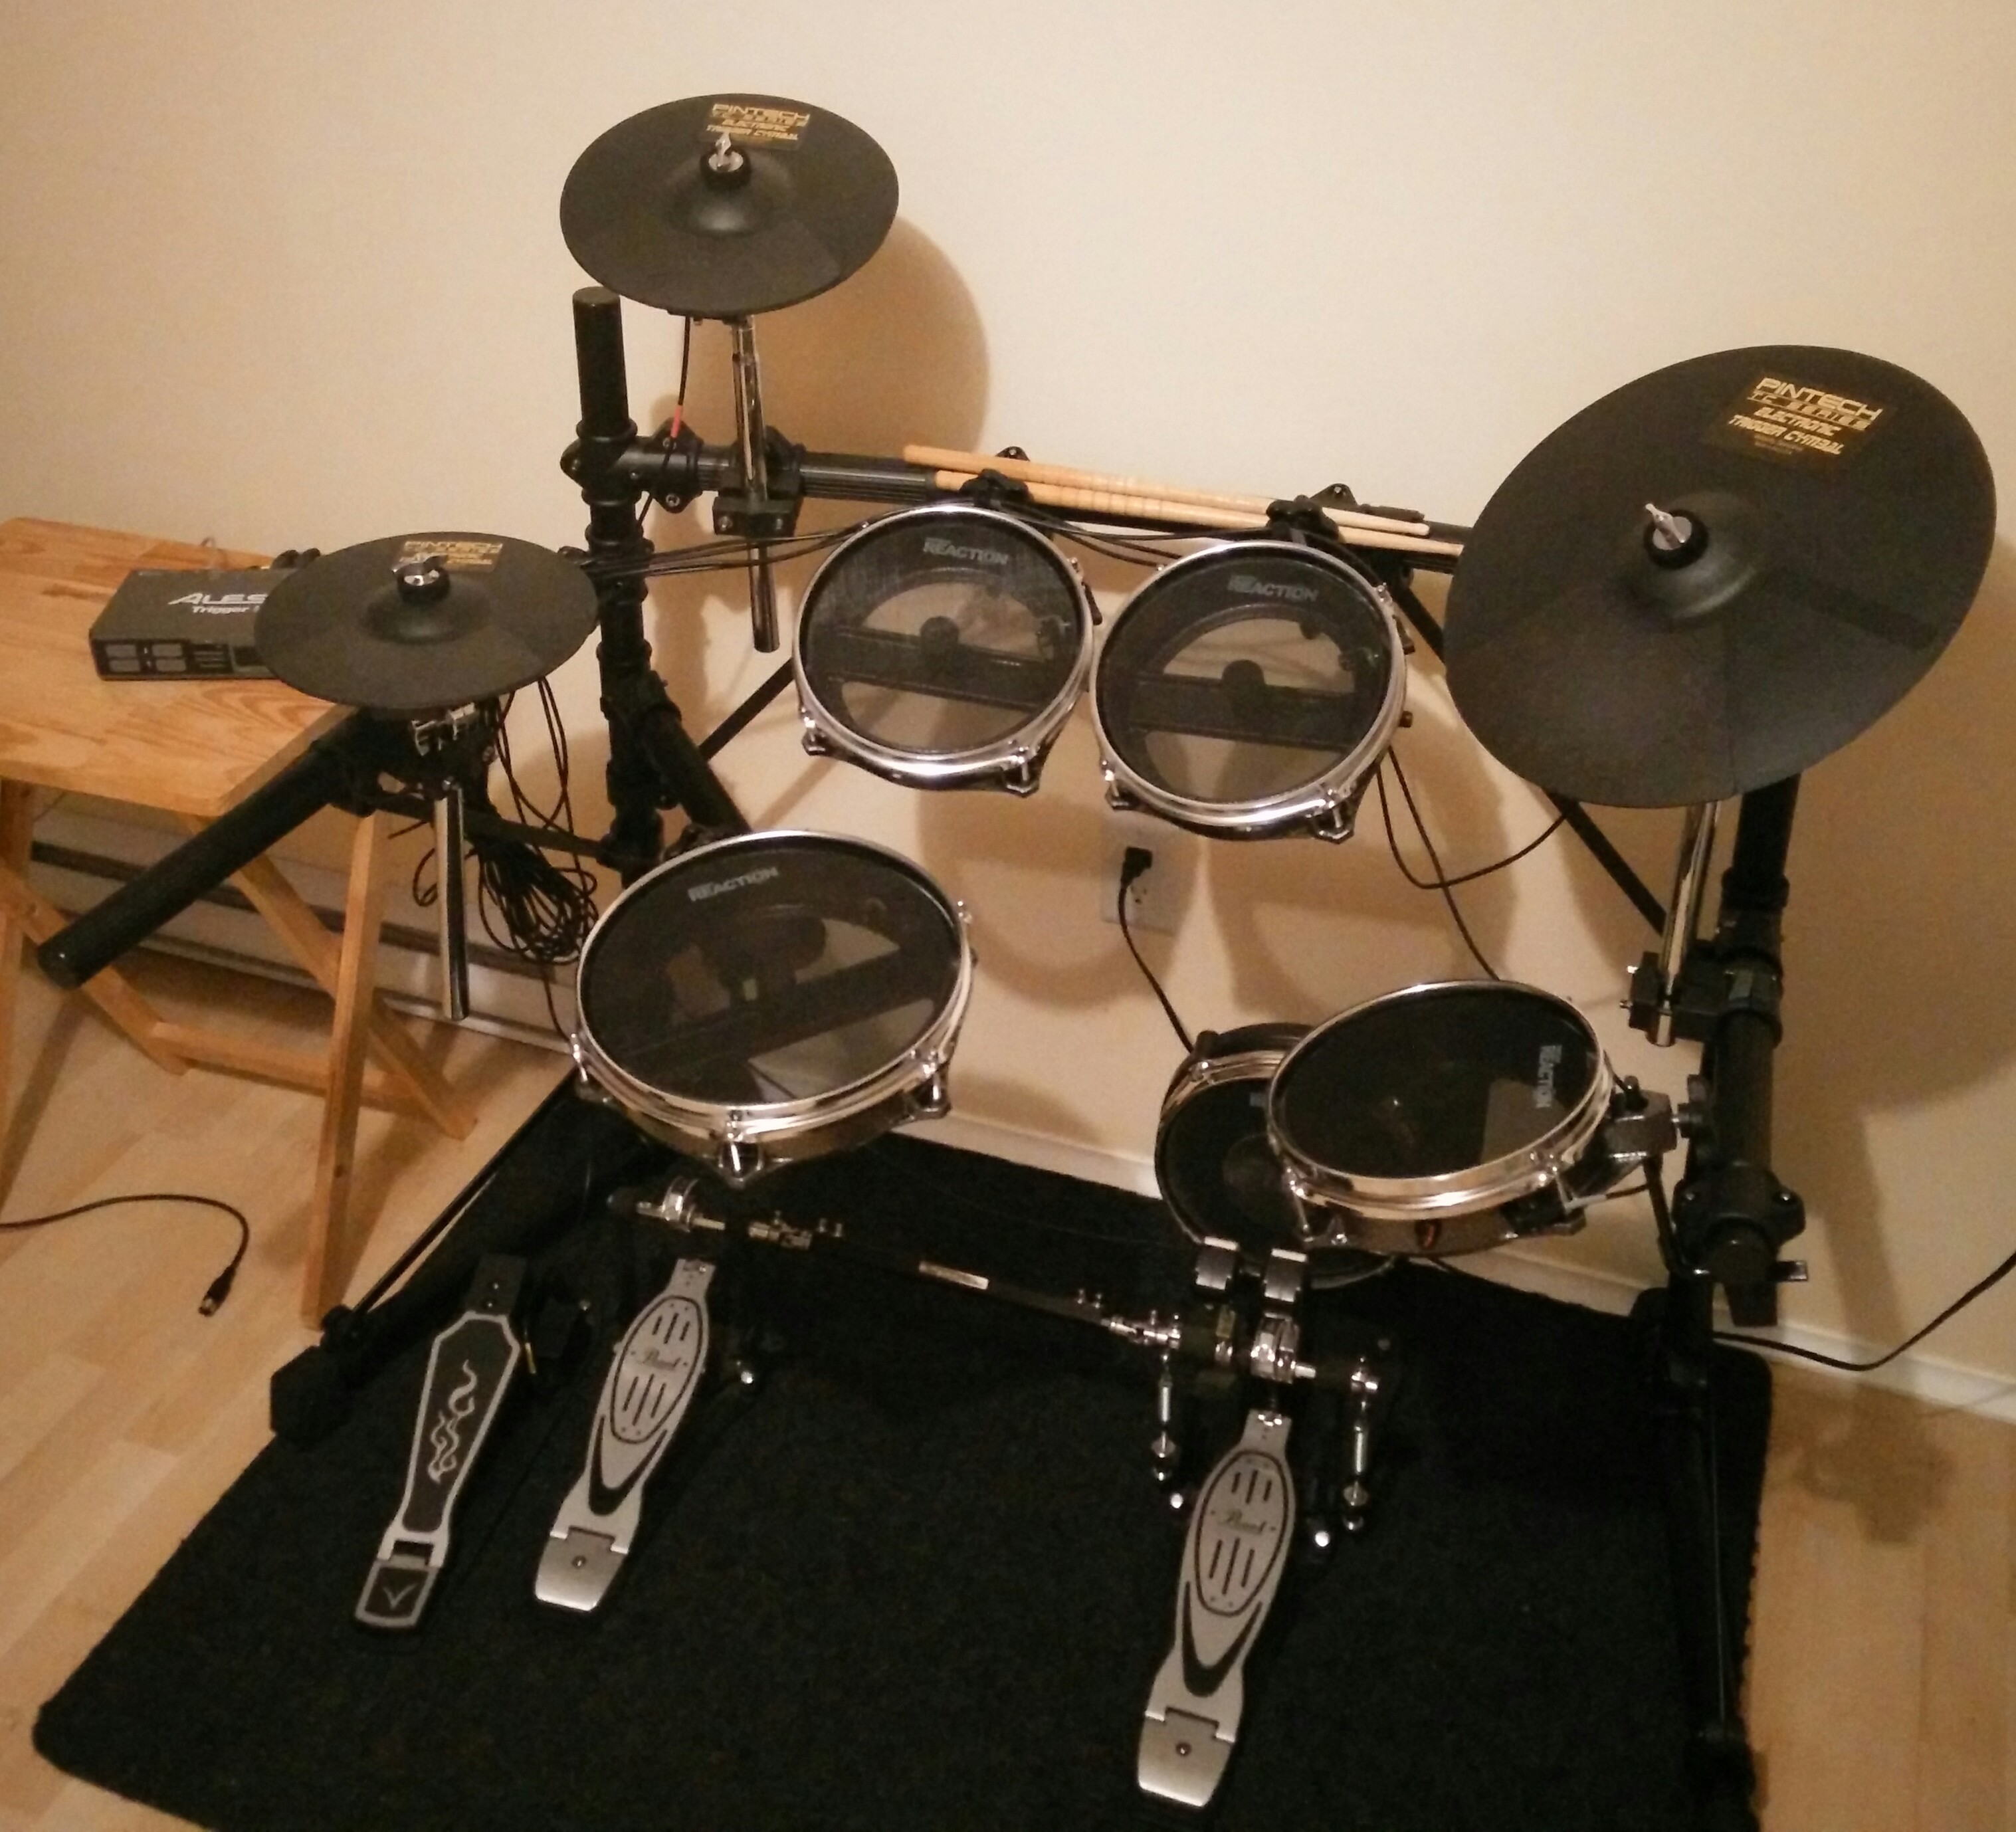 全国どこでも送料無料 Pintech Percussion XT Series Practice Cymbal No Trigger XT-14P 